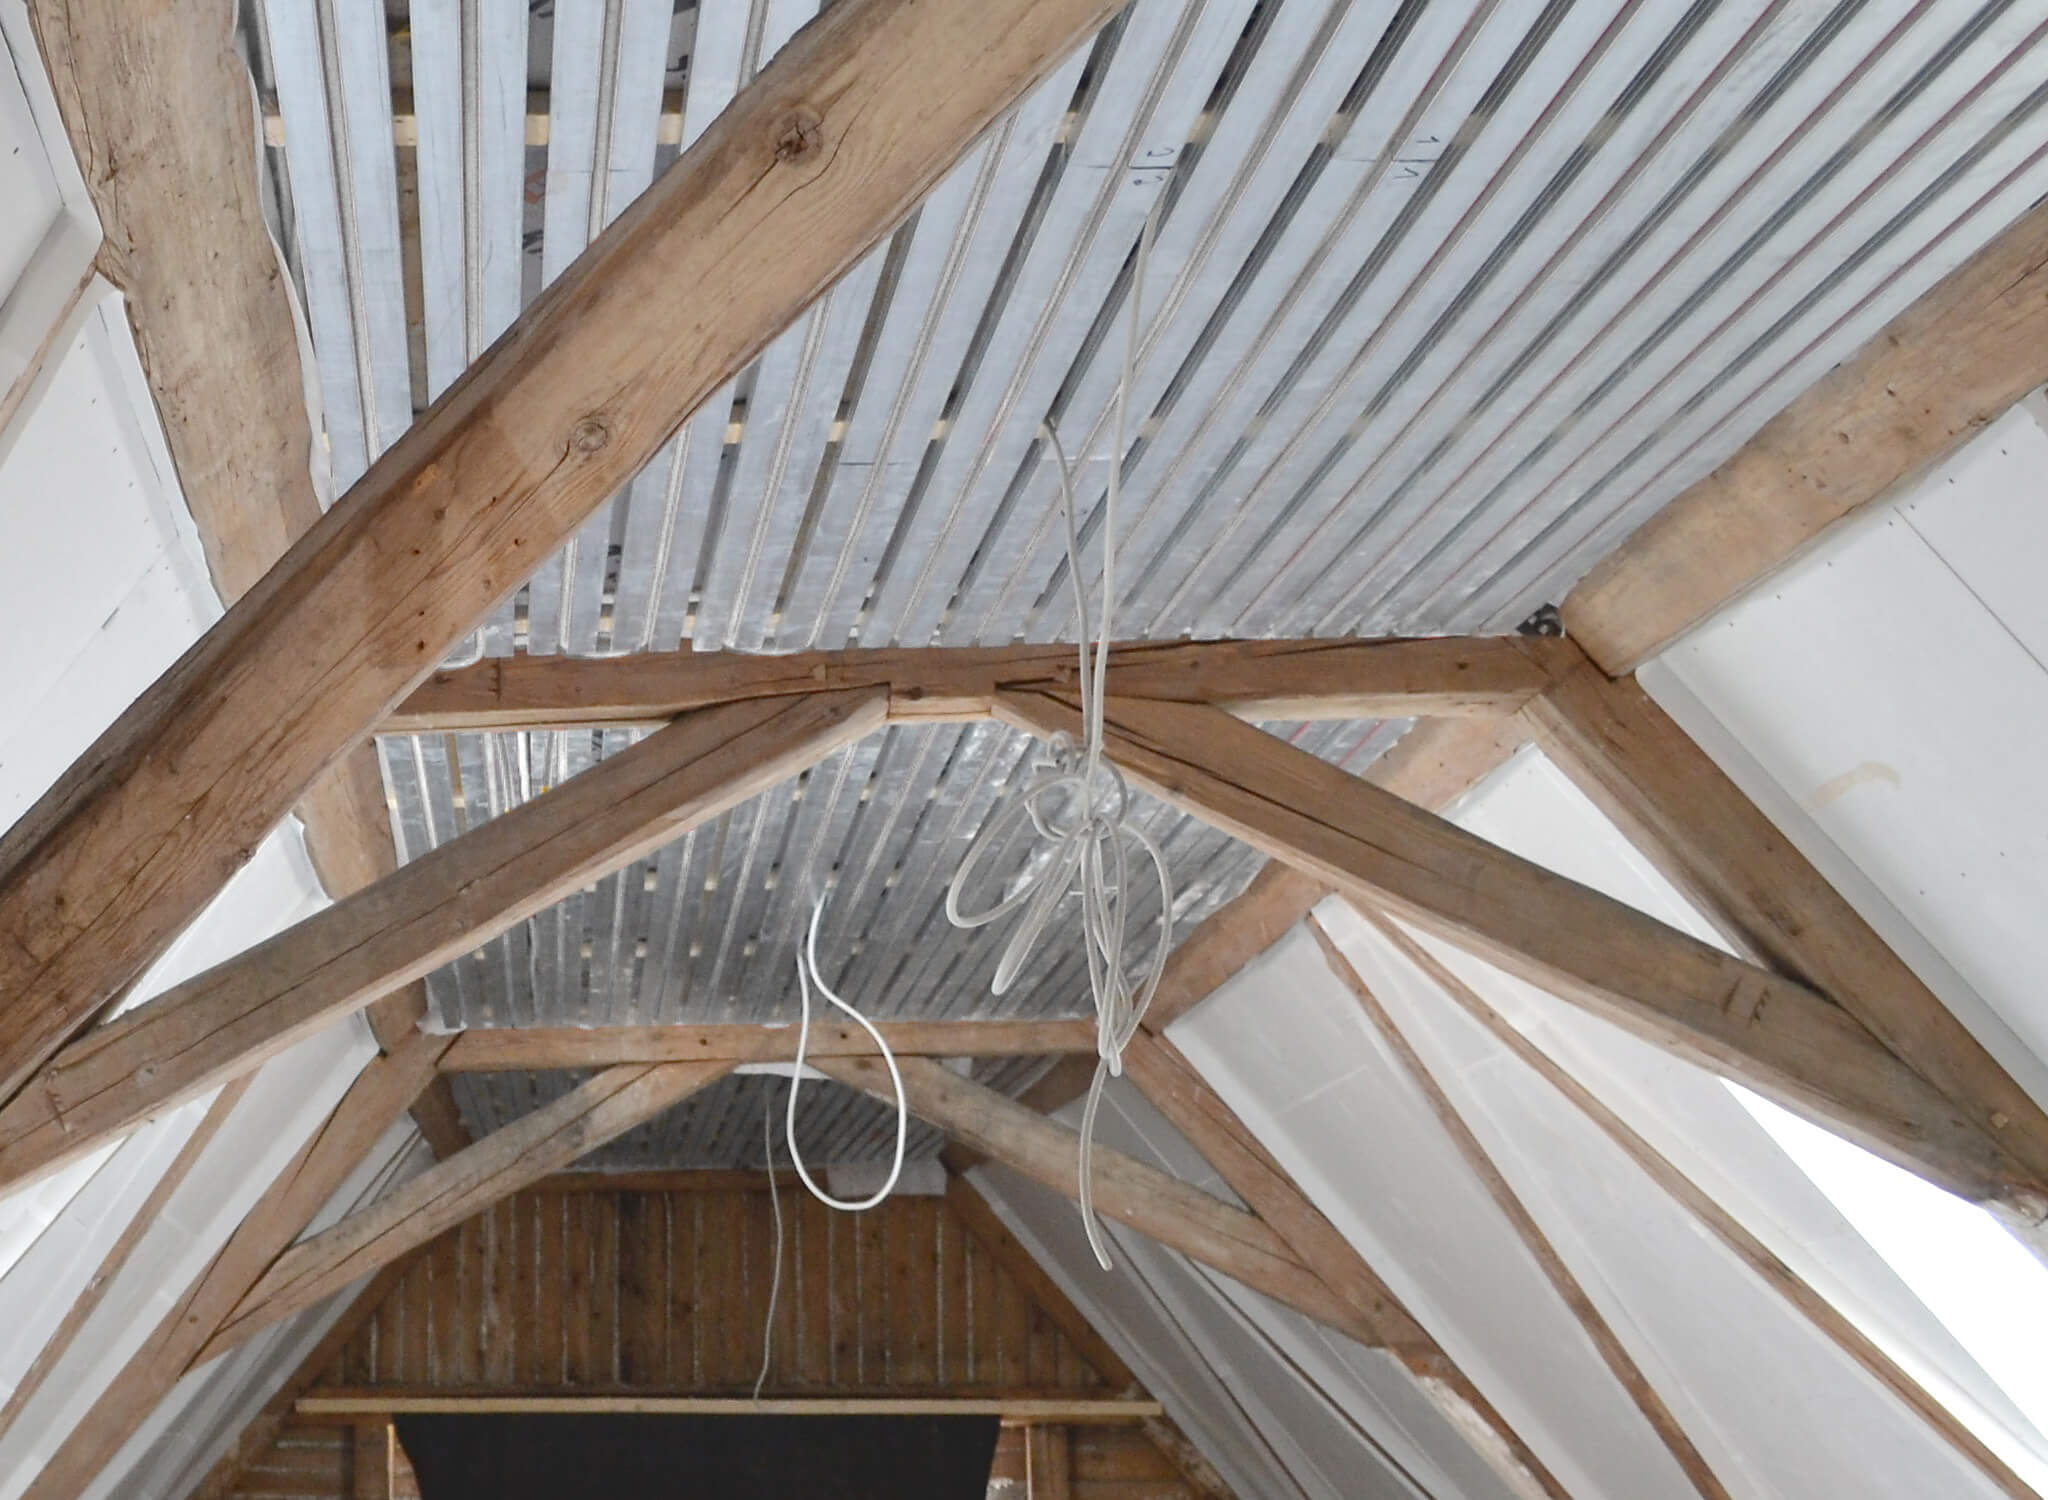 ratiodämm Klimadecke - Montage Dachgeschoss/Balkendecke